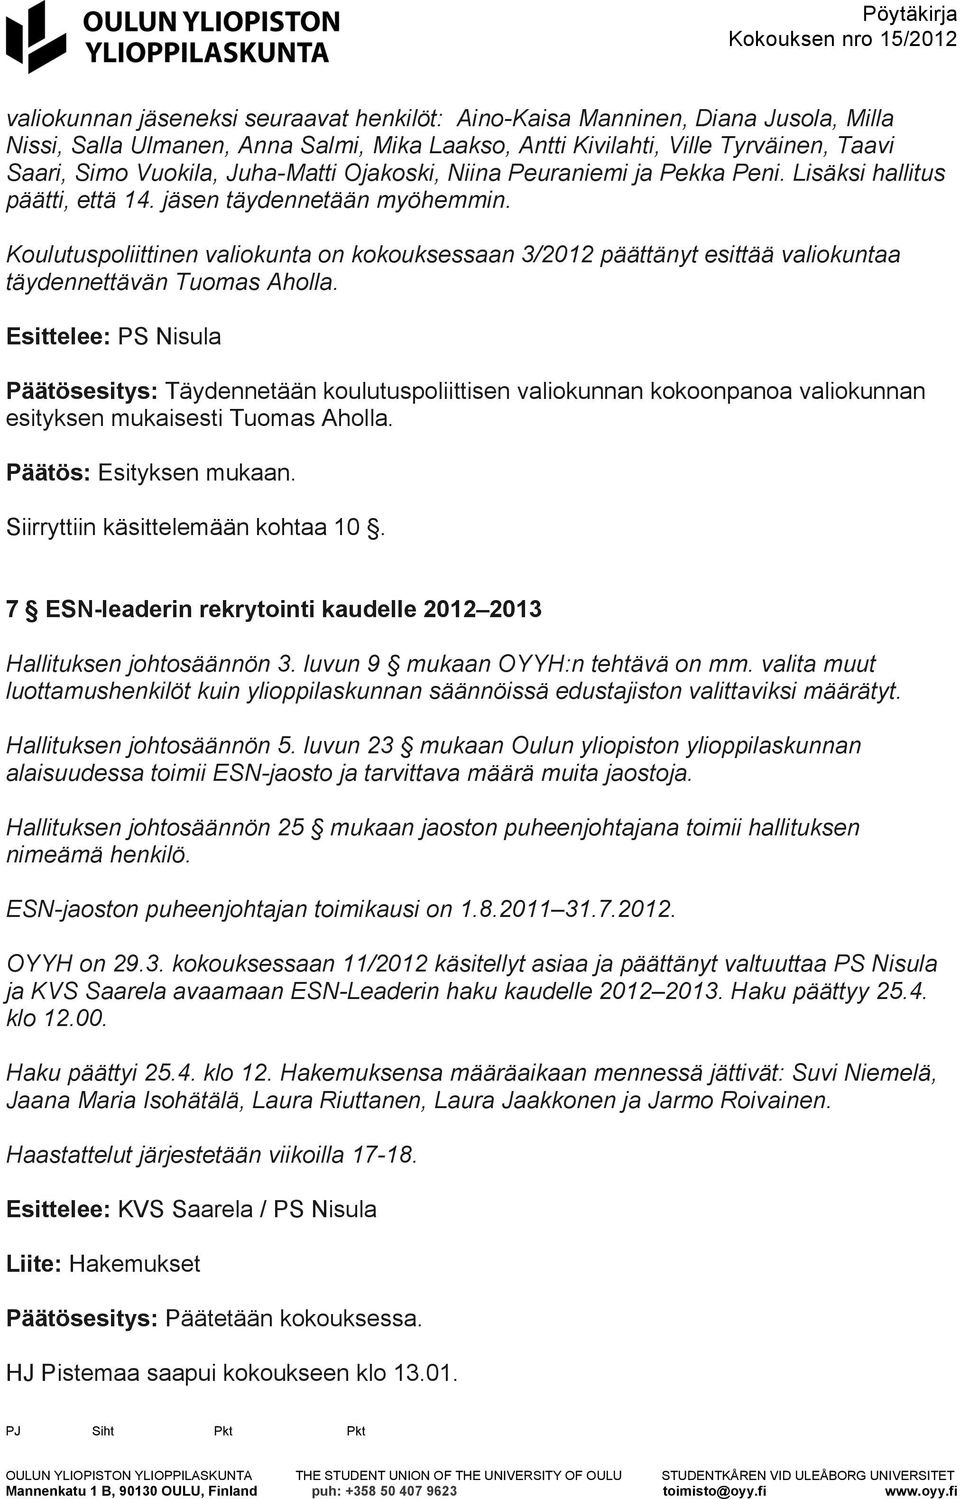 Koulutuspoliittinen valiokunta on kokouksessaan 3/2012 päättänyt esittää valiokuntaa täydennettävän Tuomas Aholla.